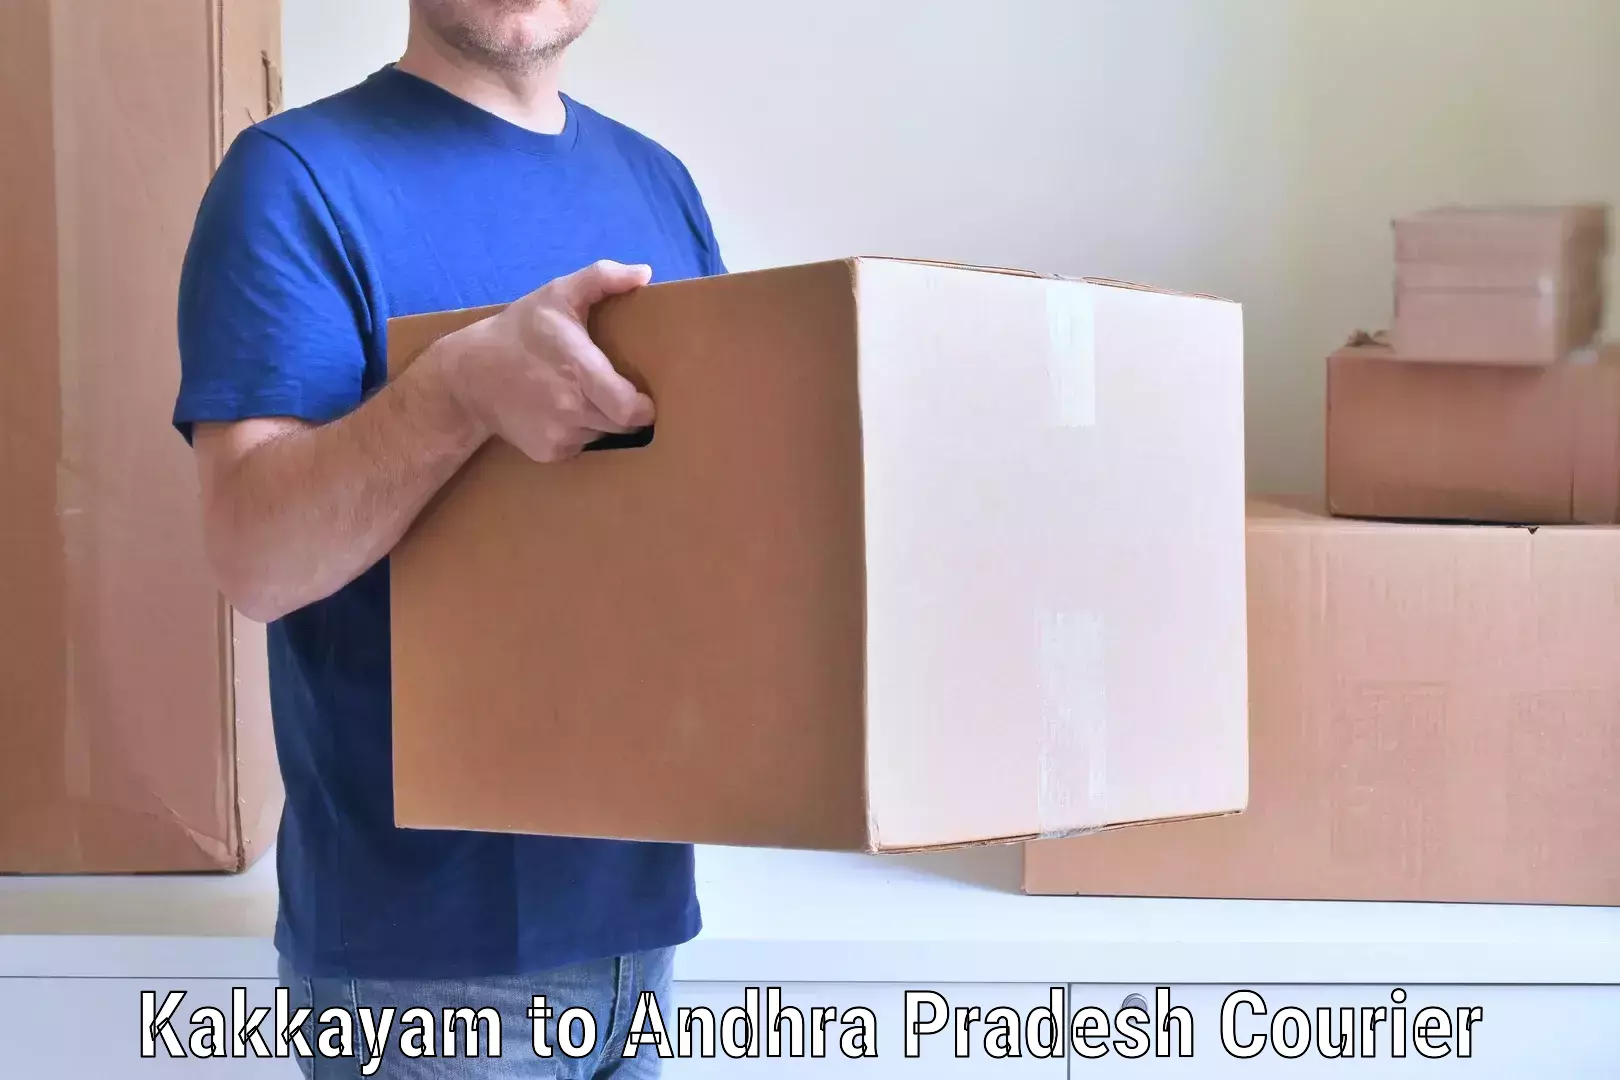 Personalized furniture moving in Kakkayam to Andhra Pradesh